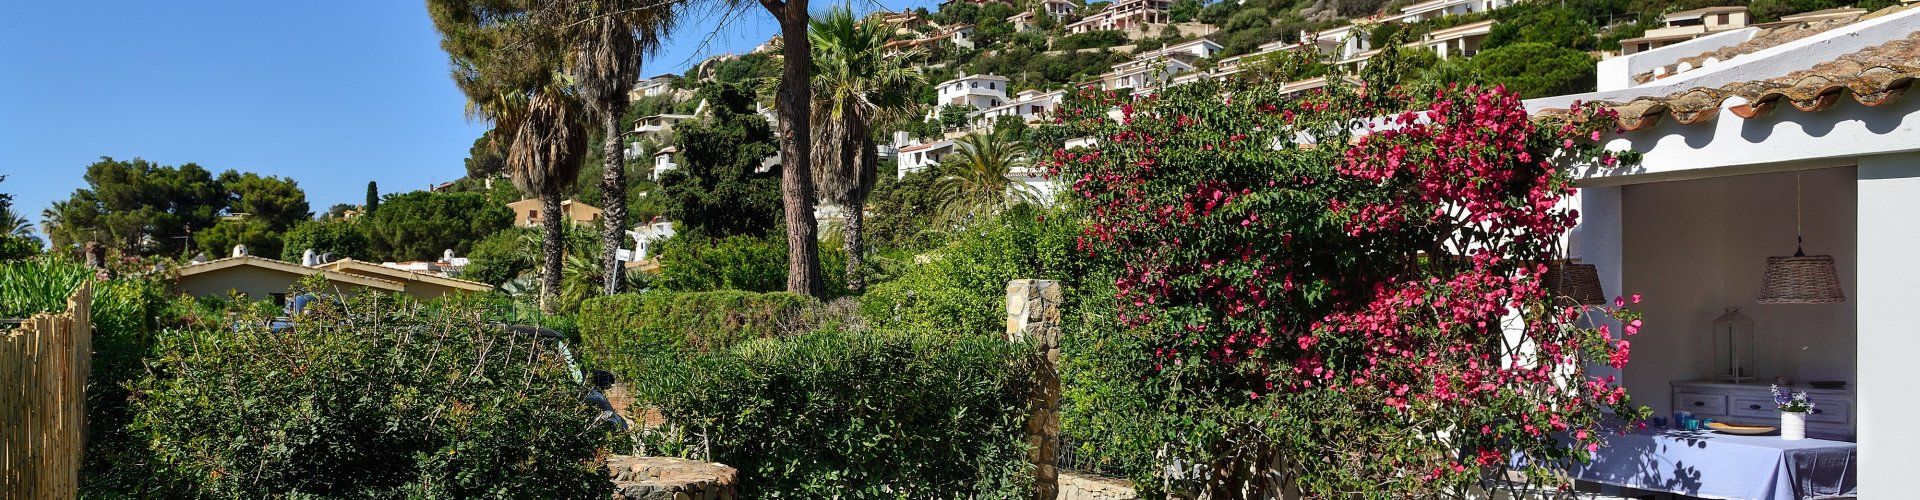 Zauberhaftes Ferienhaus An Der Costa Rei Sardinien De